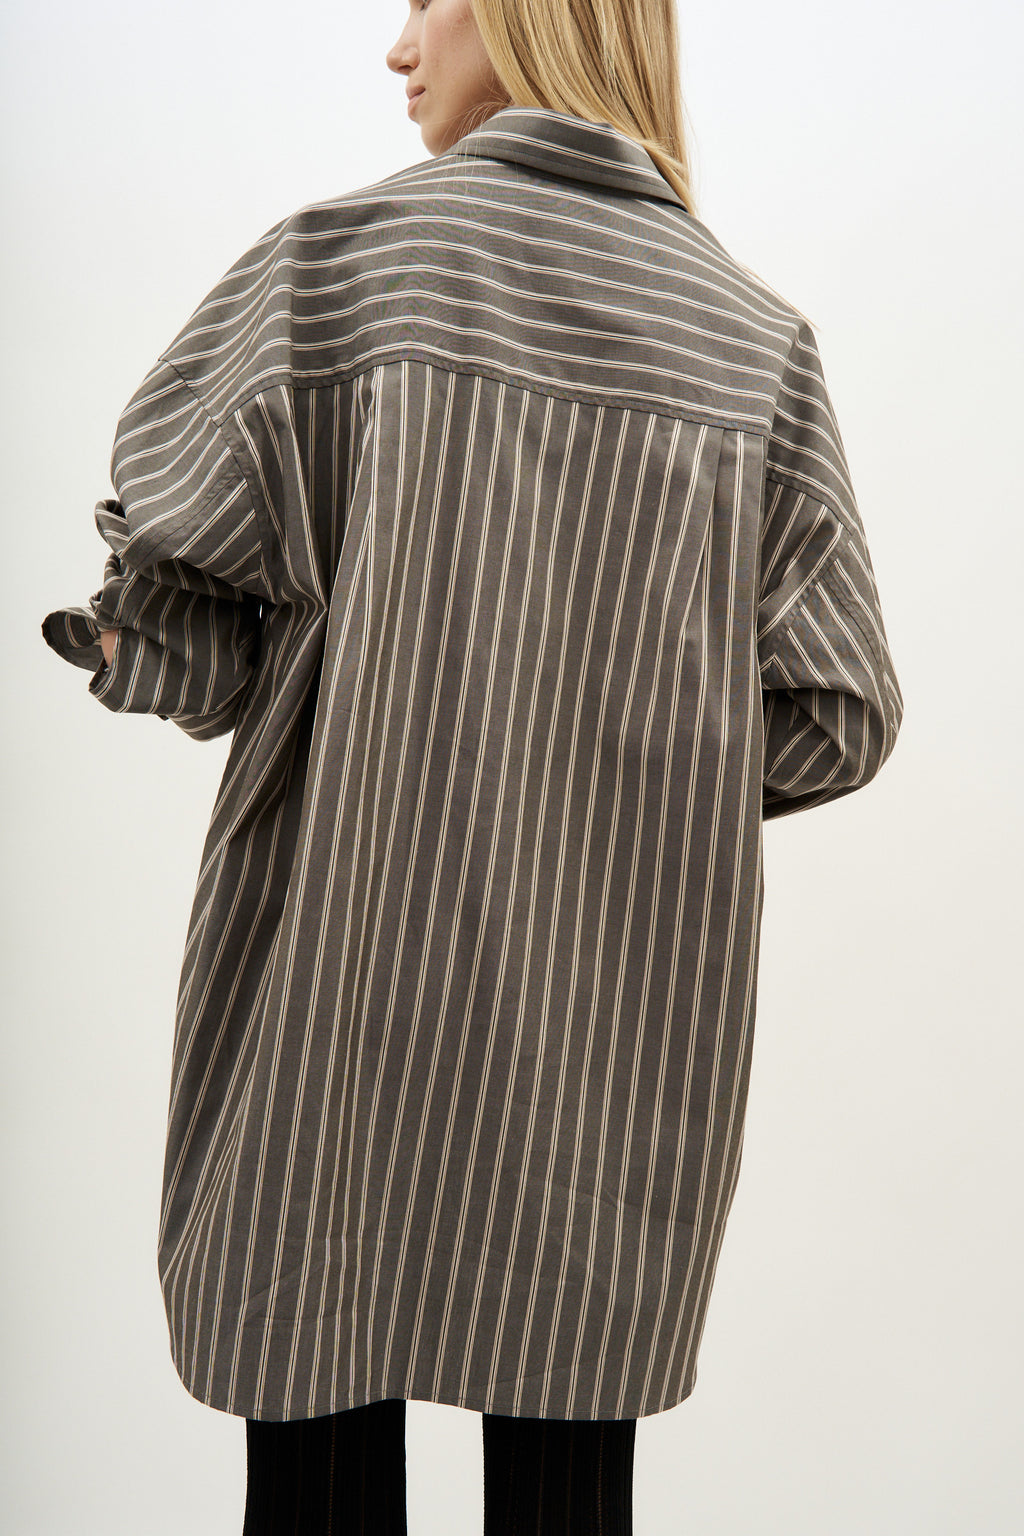 Lana Brown Striped Shirt